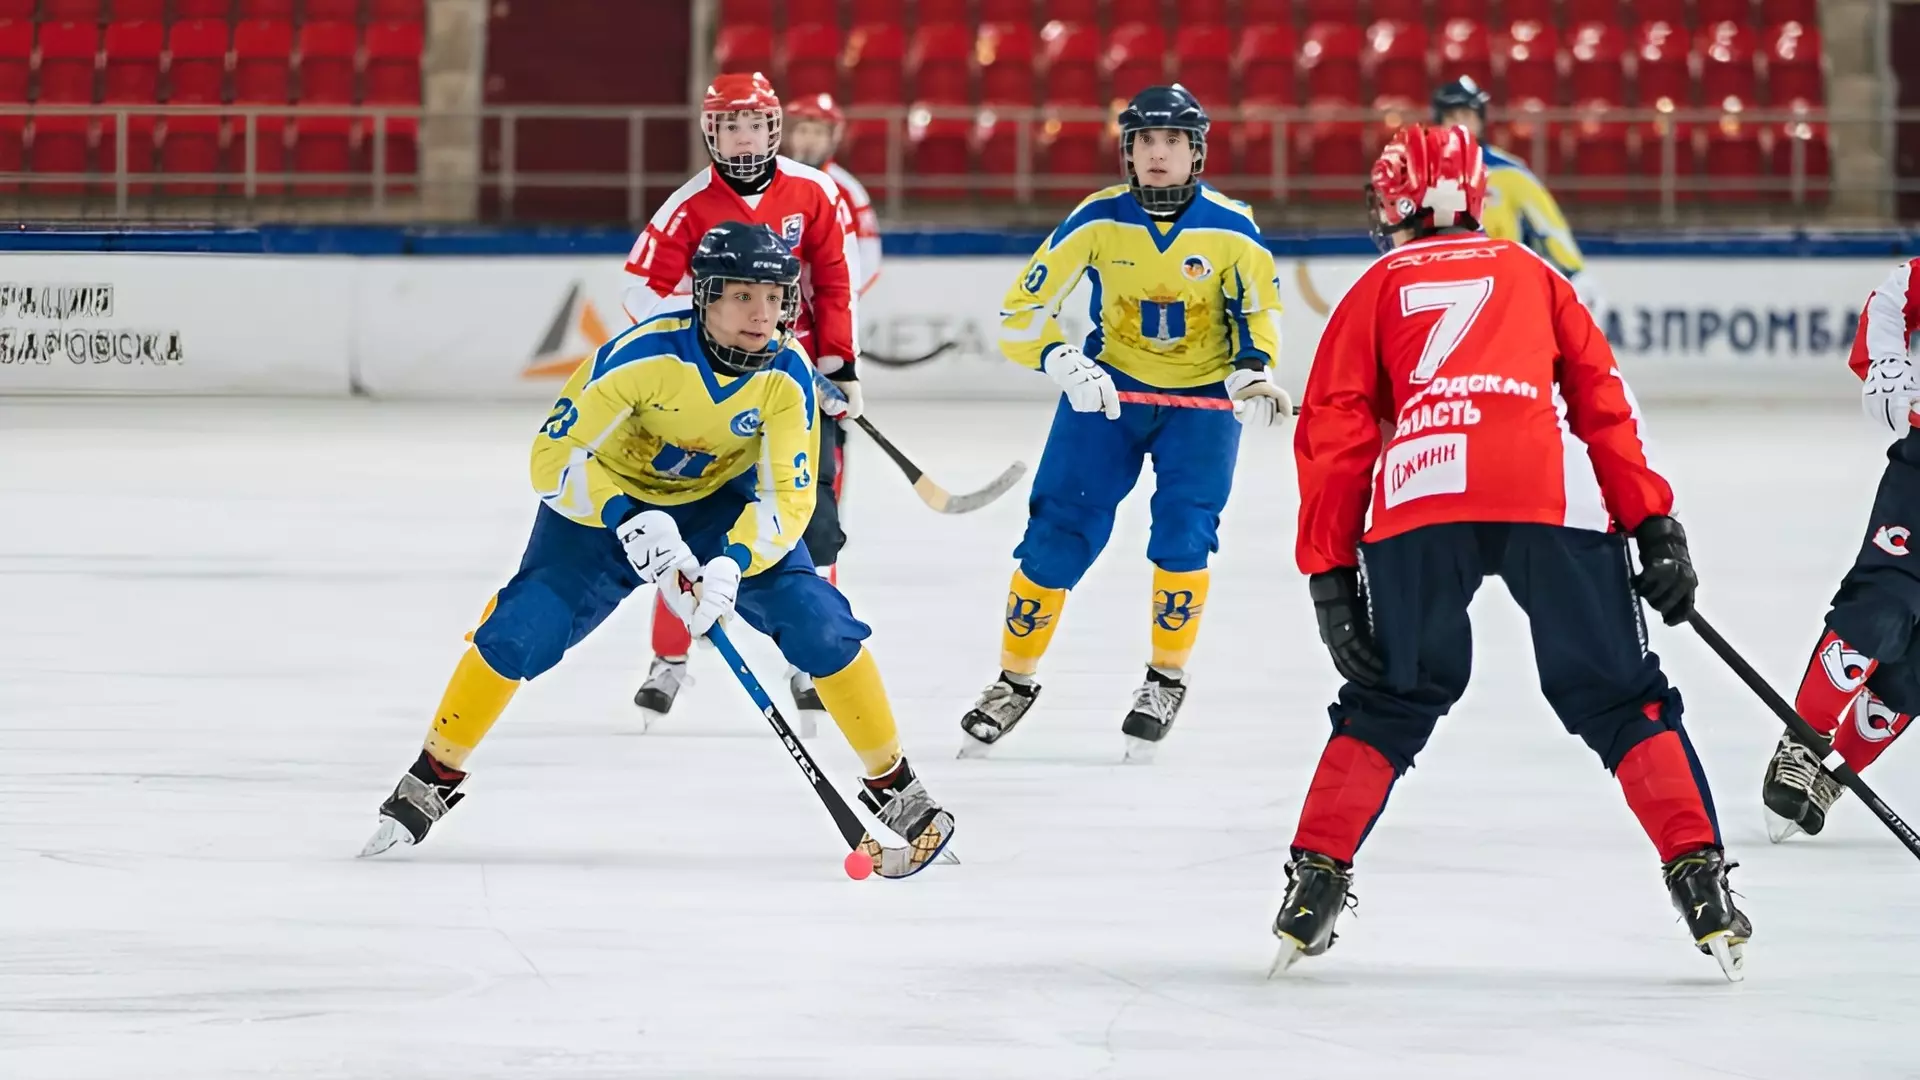 Восемь хоккейных команд борются за звание чемпиона в Хабаровске